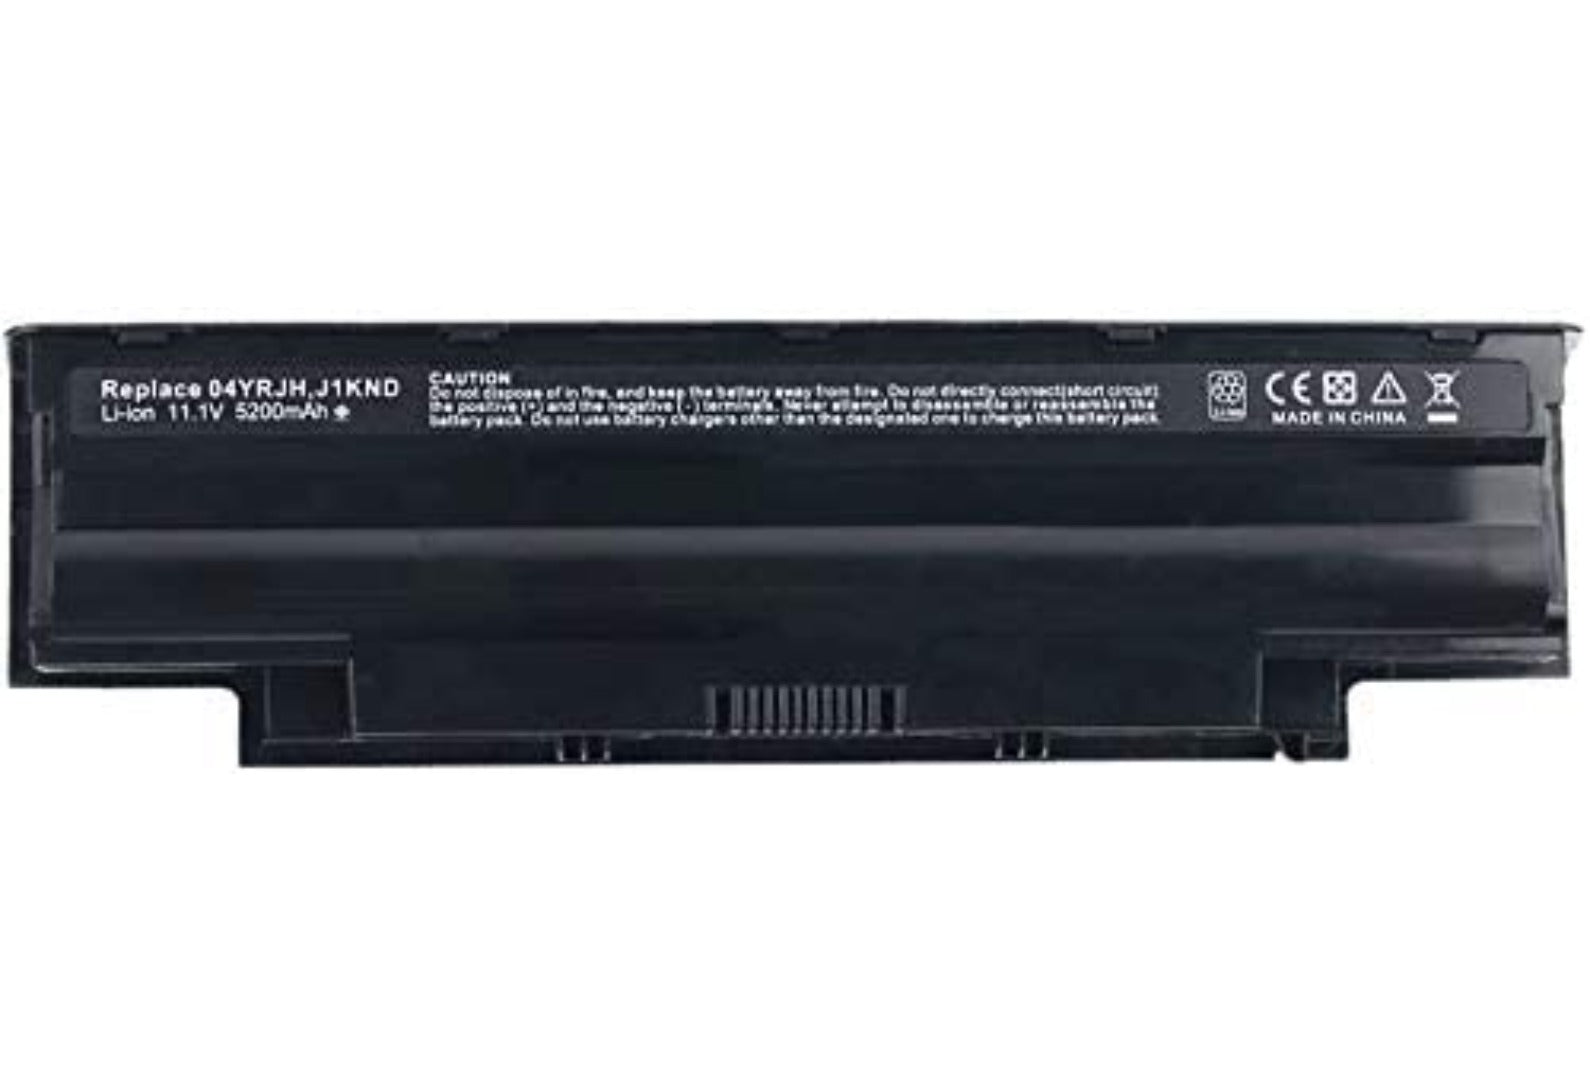 LAPTOP Battery for Dell J1KND Inspiron N5010 N5030 N5040 N5050 N7010 N7110 N4010.